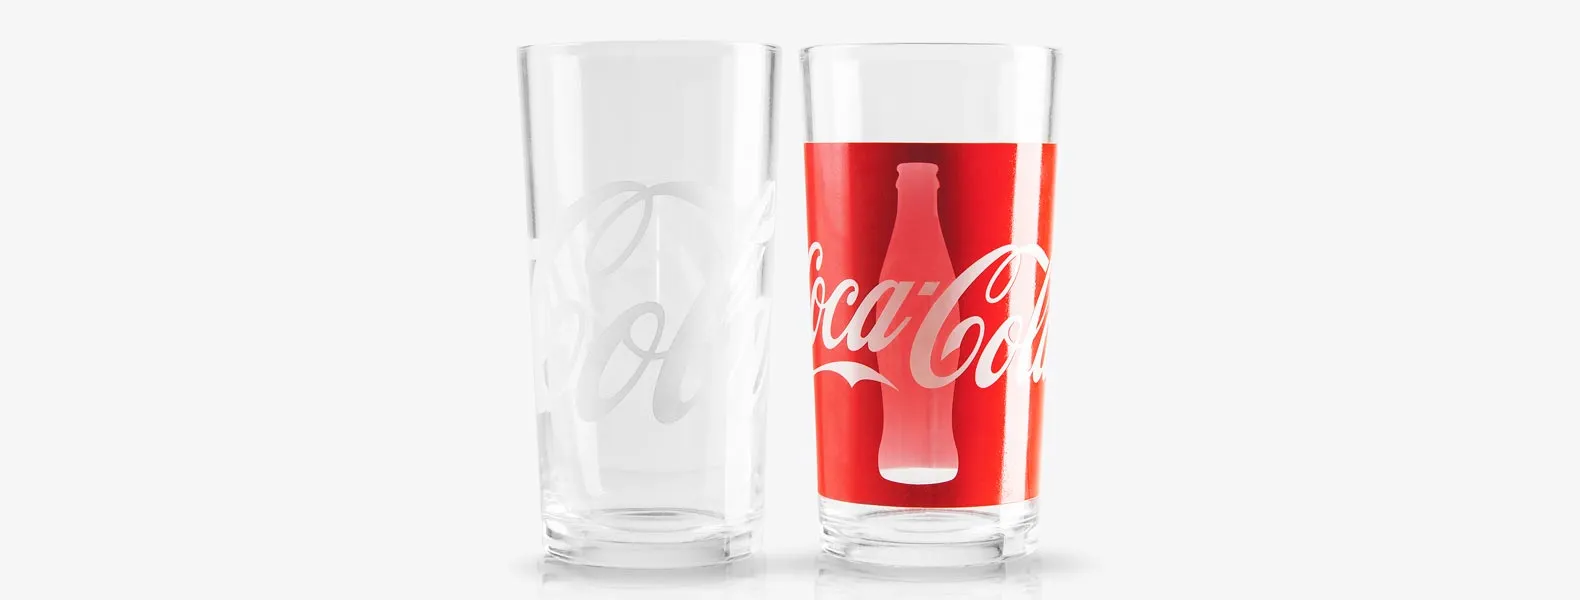 Jogo de copos personalizados contendo dois copos Coca Cola em vidro e embalagem.